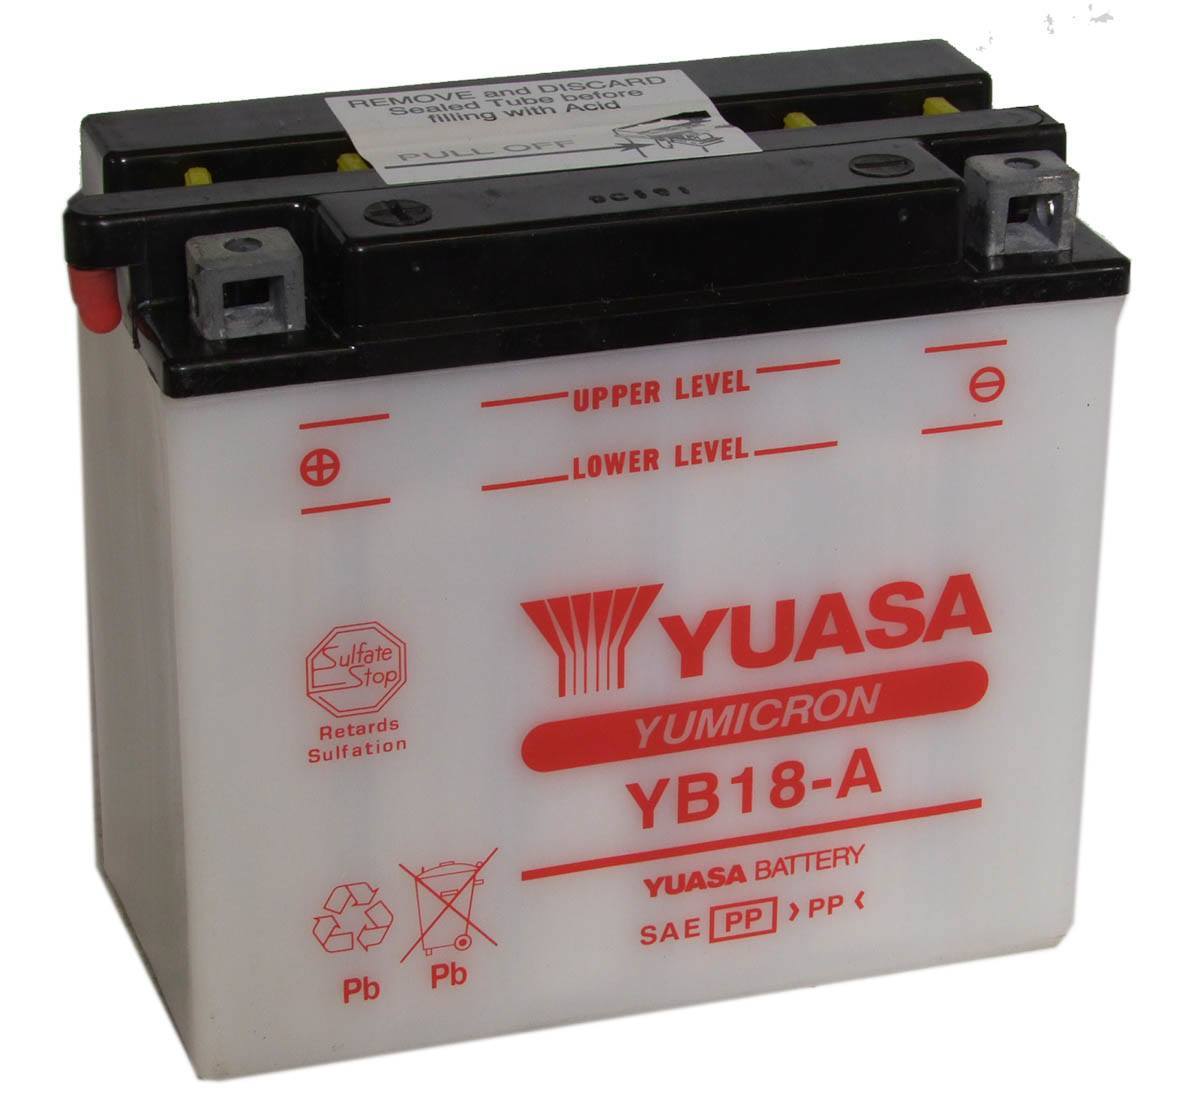 Batería de moto 12V 18AH YUASA - YB18-A - Precio: 72,02 € - Megataller